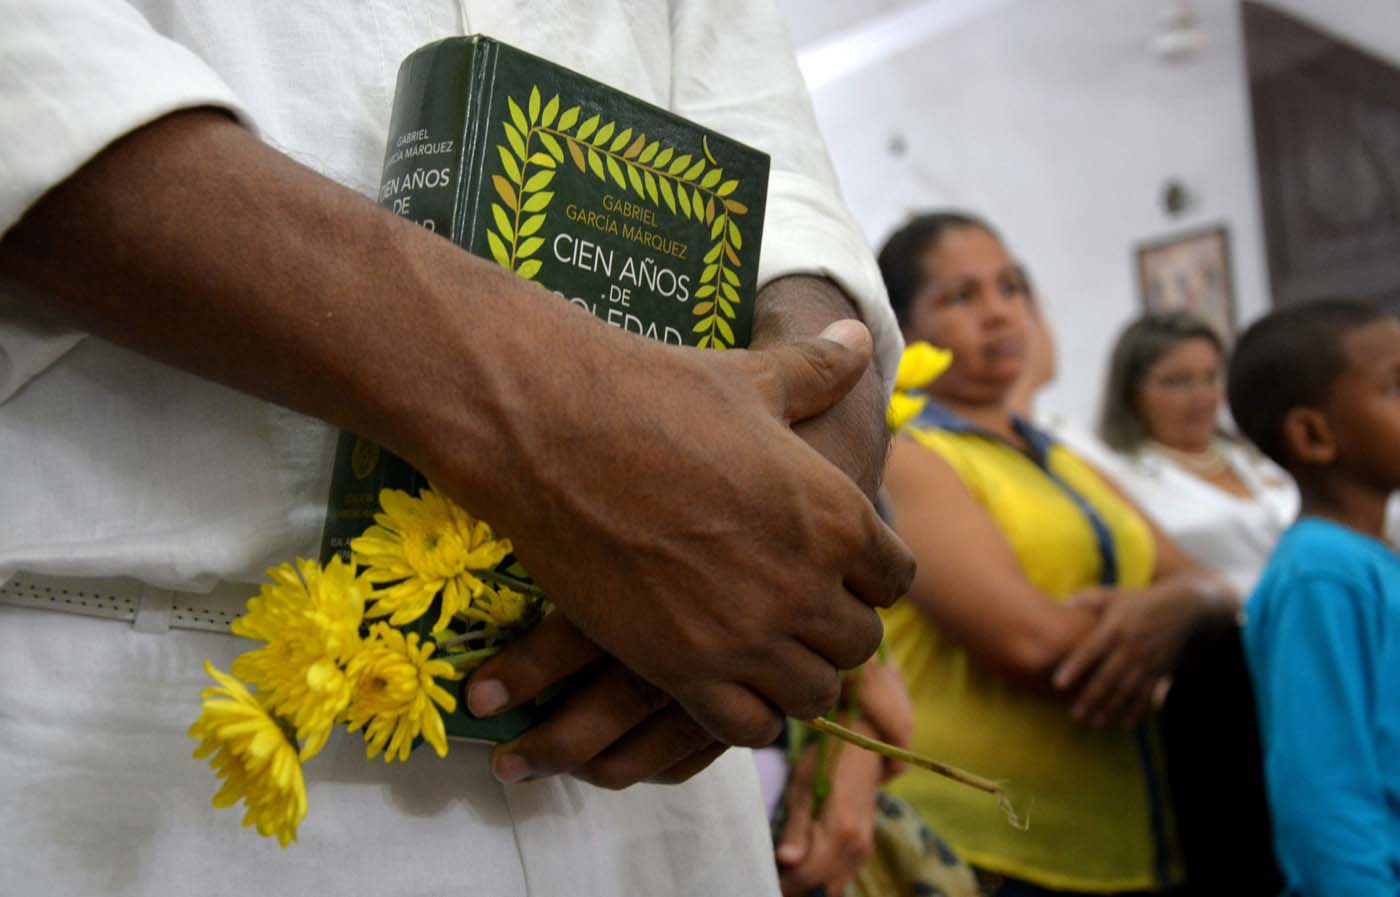 Voces del mundo celebran en Cartagena medio siglo de “Cien años de soledad”